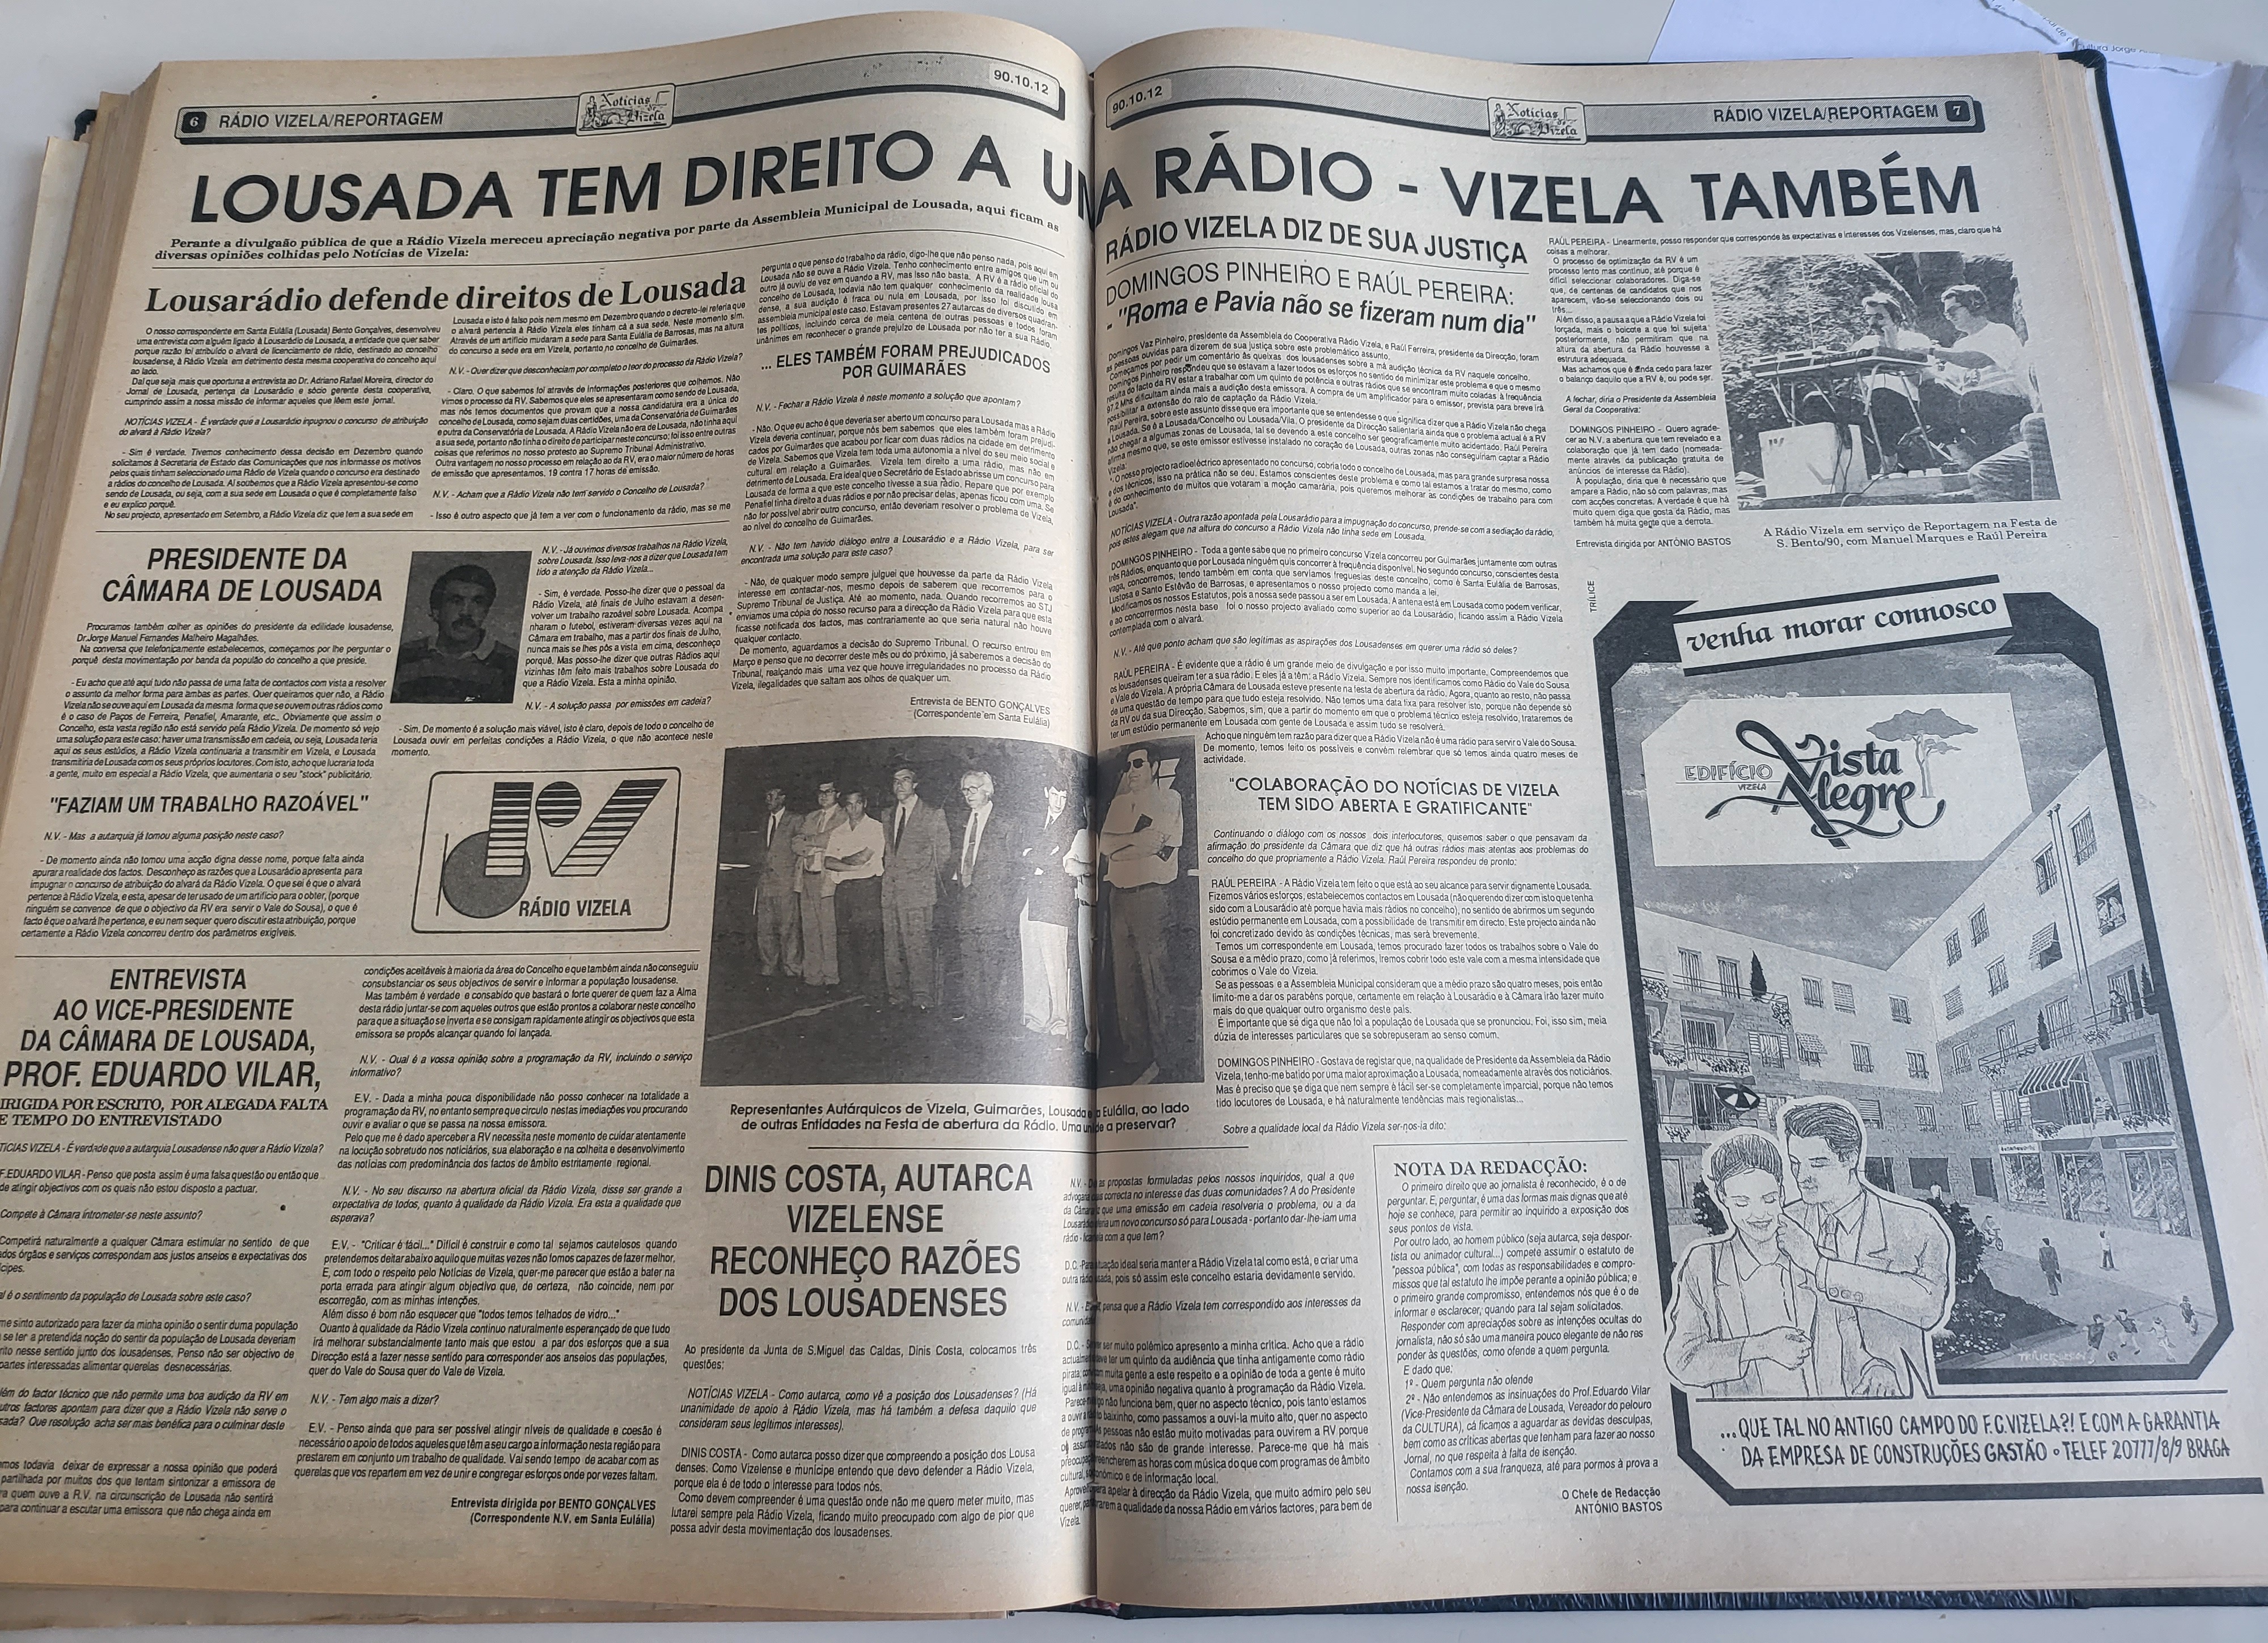 Casa do Povo de Vizela no Nacional de Damas Clássicas - Rádio Vizela